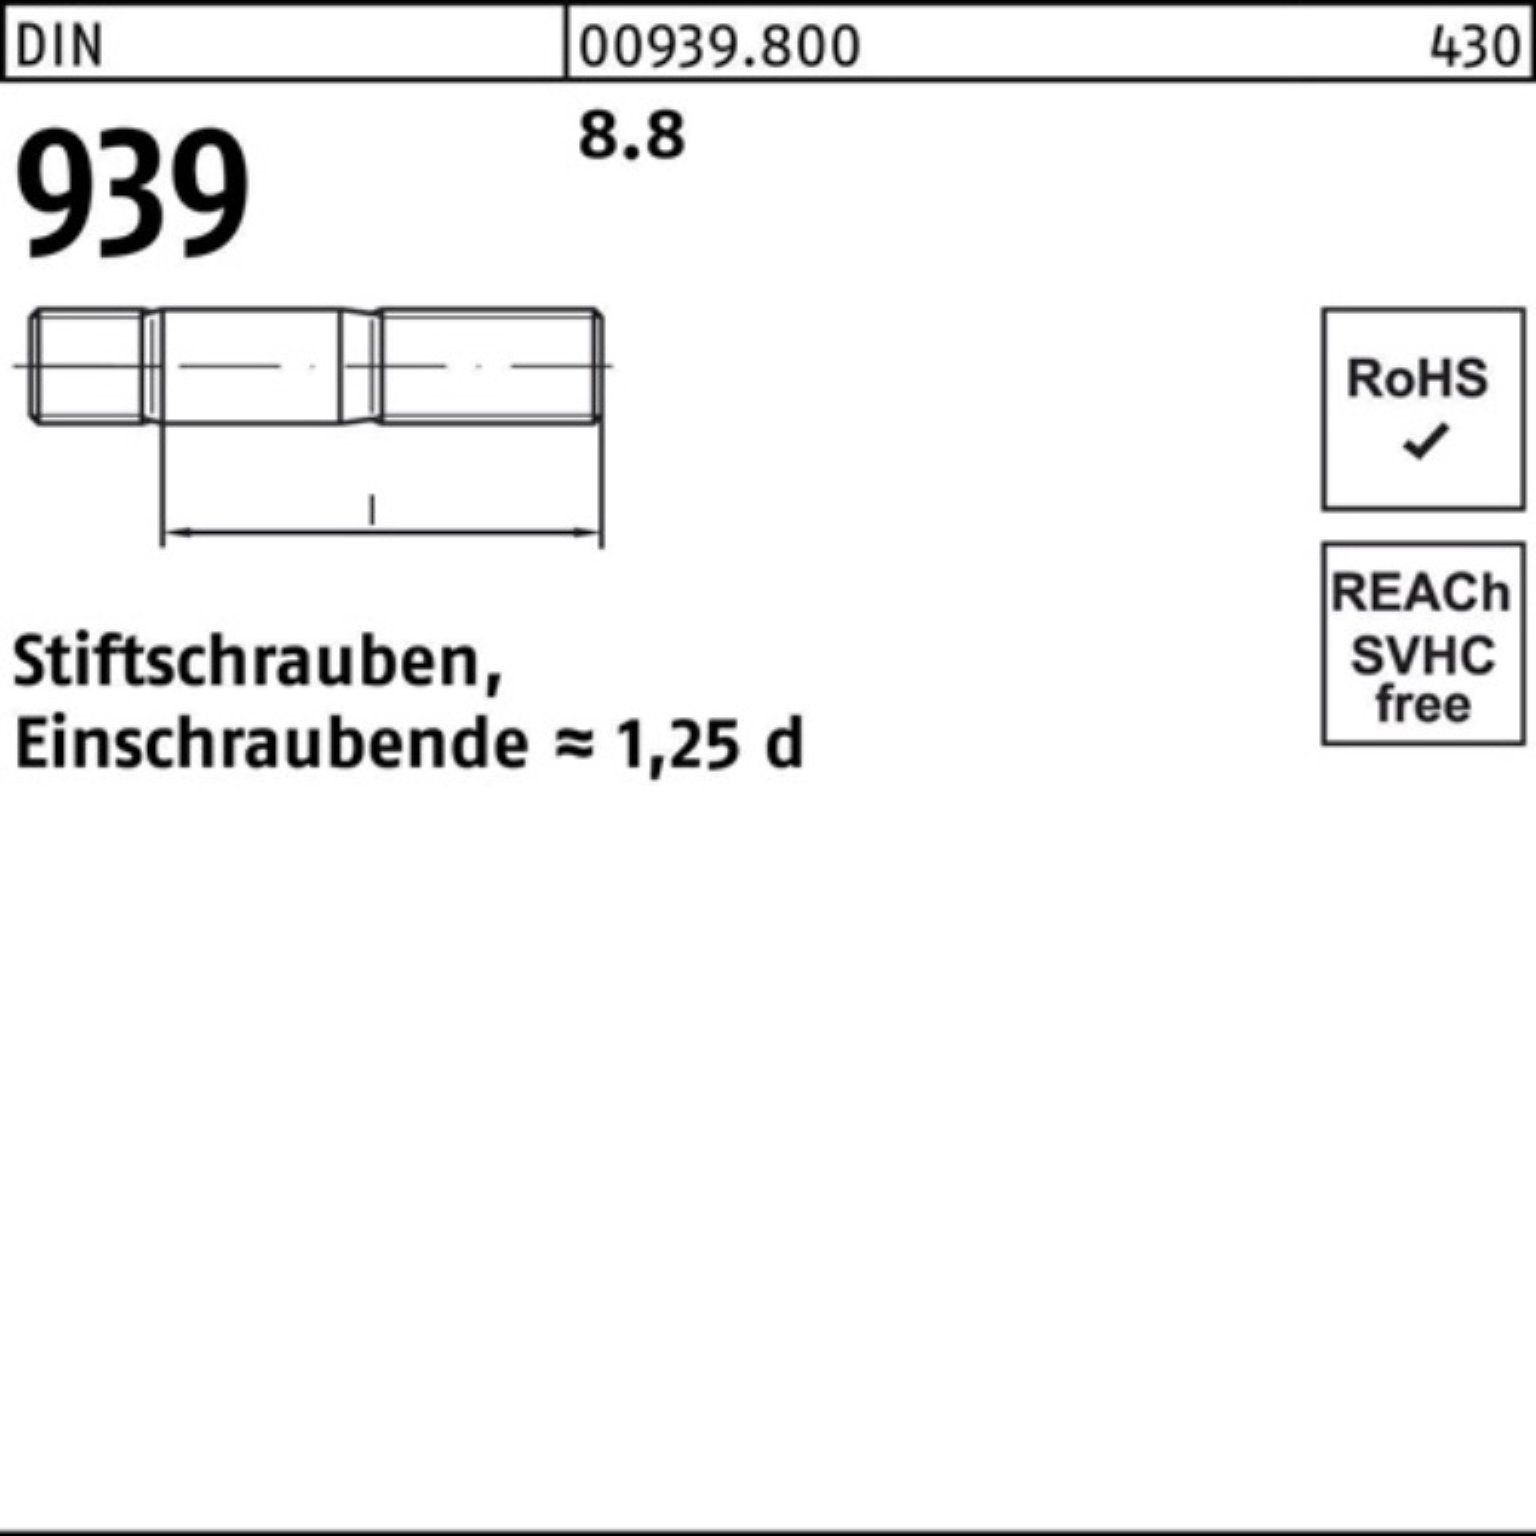 1 Stiftschraube M24x Einschraubende=1,25d Stiftschraube 90 939 St DIN Pack 8.8 100er Reyher